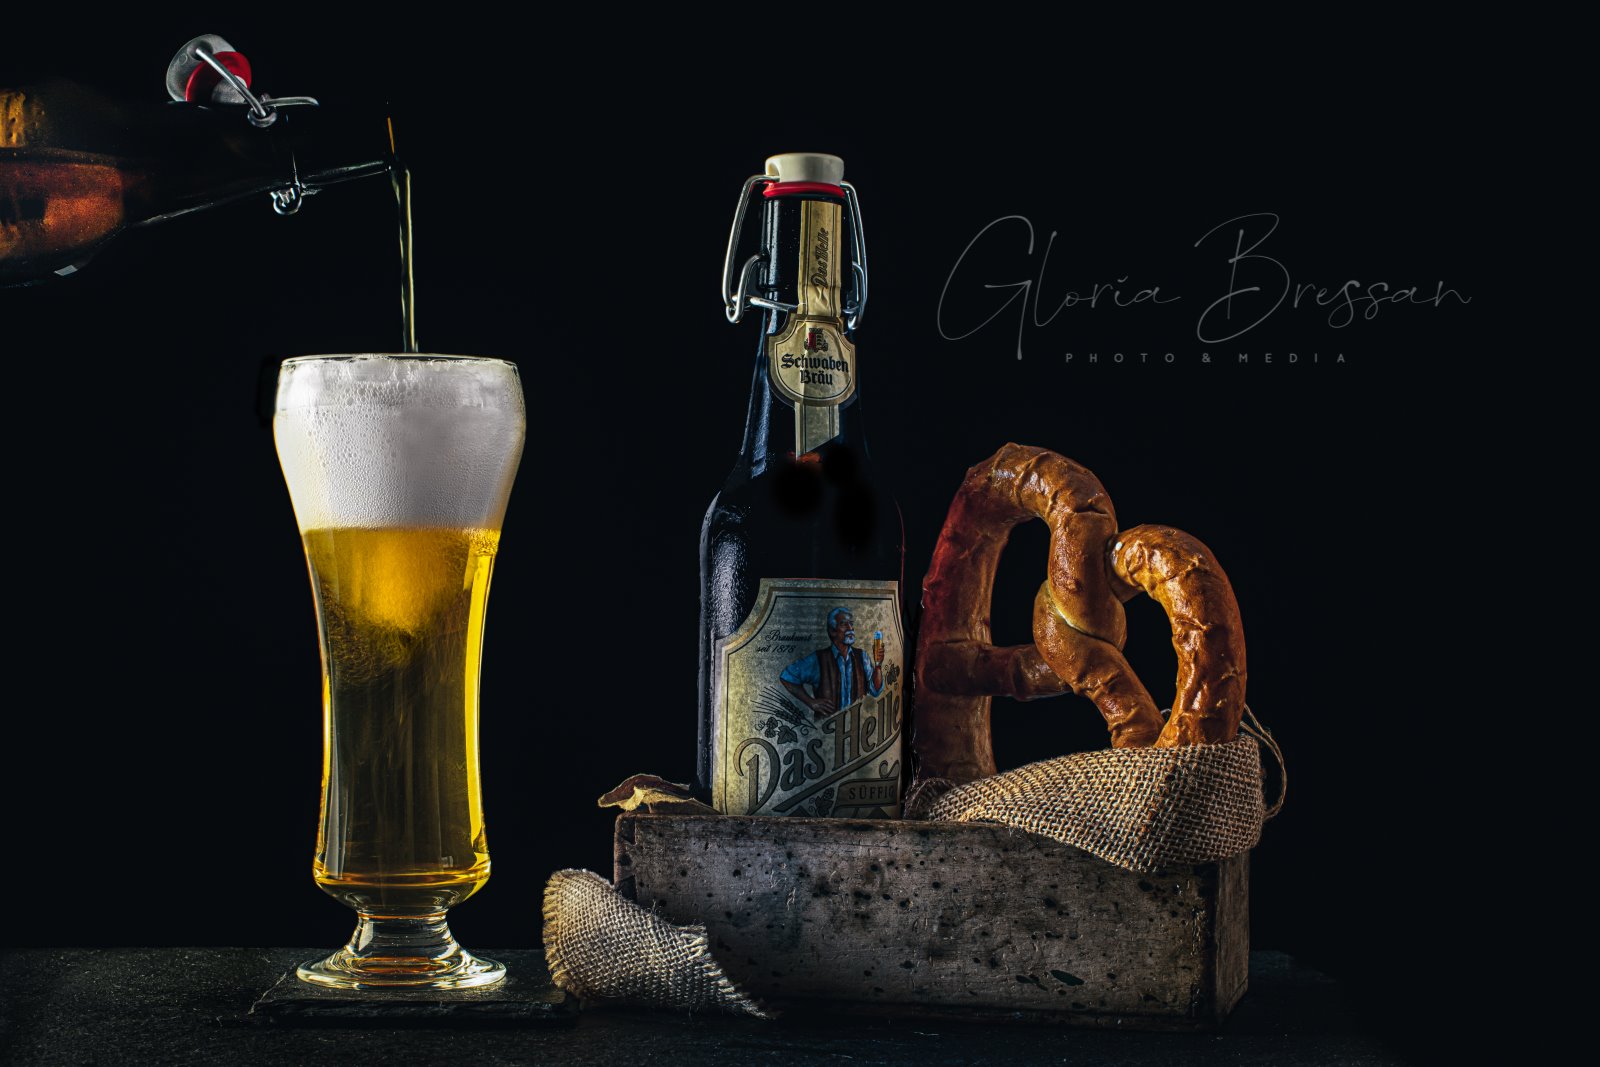 weissbier-birra-beer-food-photography-switzerland-foodphotographyzurich-still-life-photography